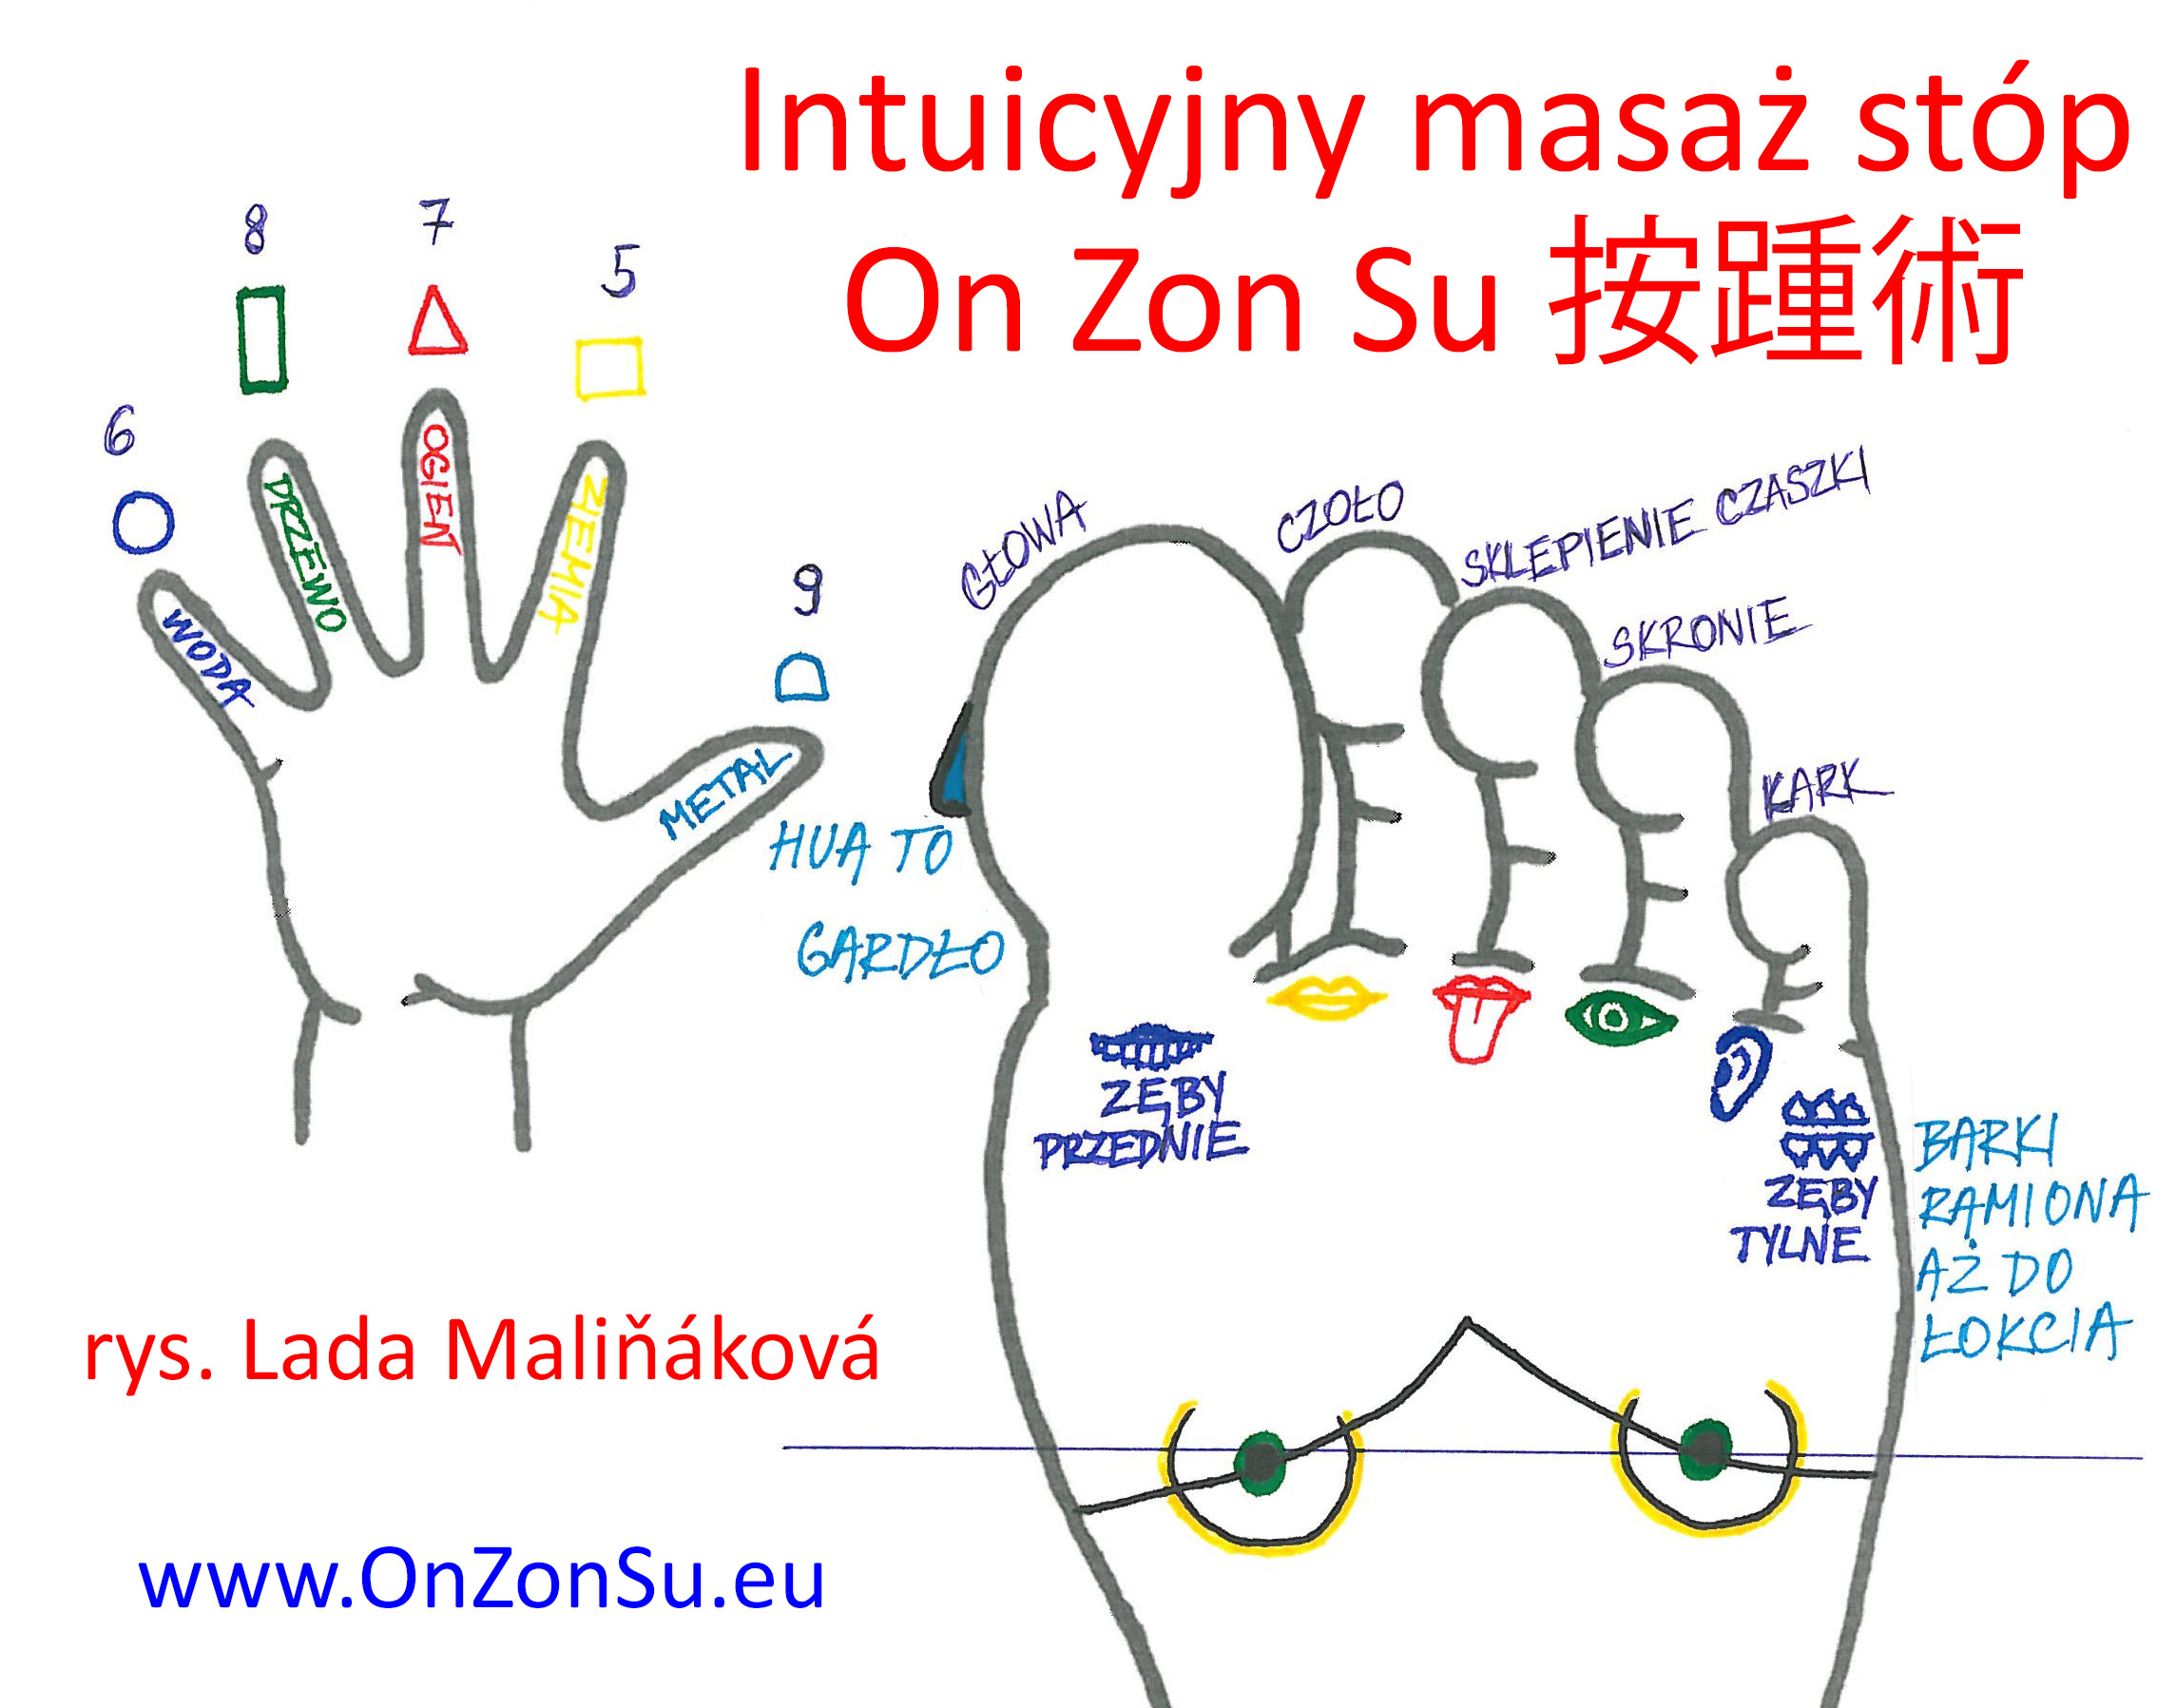 Kurs masażu stóp On Zon Su, Szkolenia refleksologii stóp - Intuicyjny masaż stóp On Zon Su 按踵術 Masaz_intuicyjny.jpg